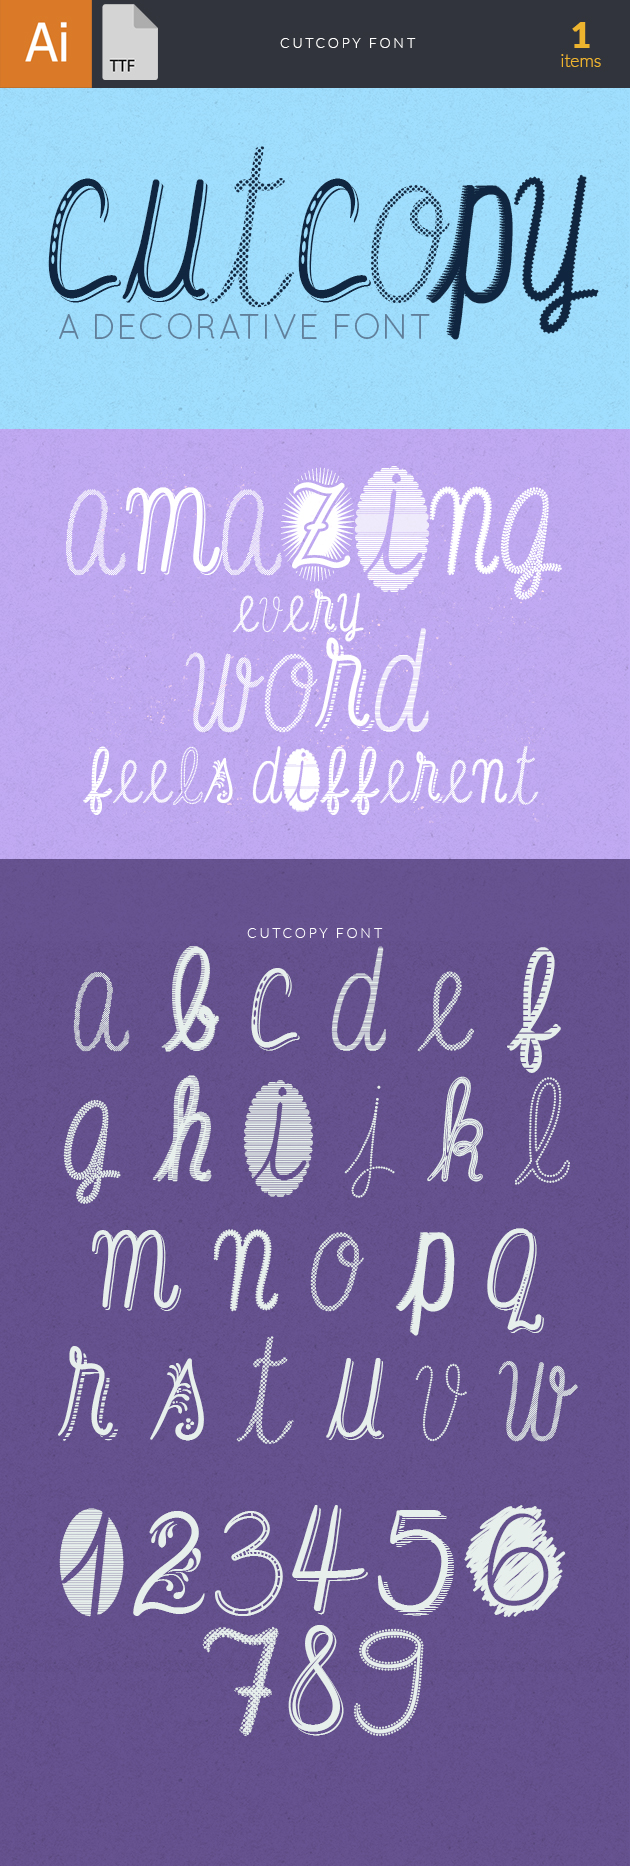 Cutcopy font